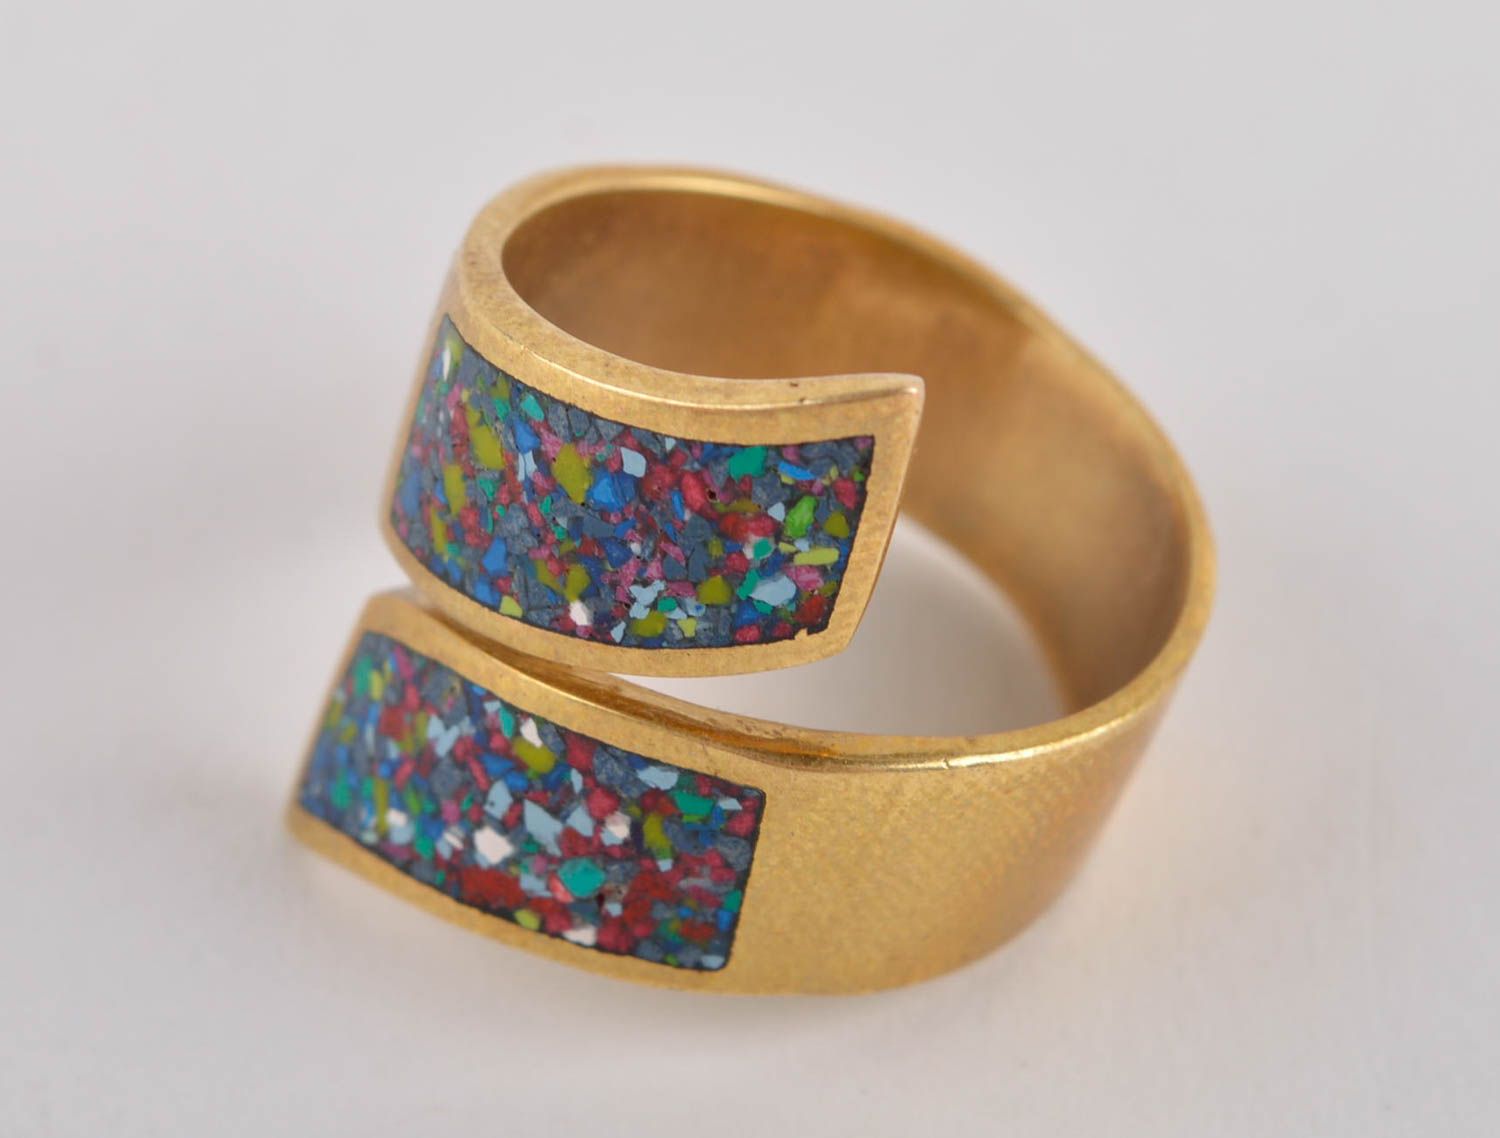 Кольцо ручной работы украшение из латуни модное кольцо оригинальное с камнями фото 2